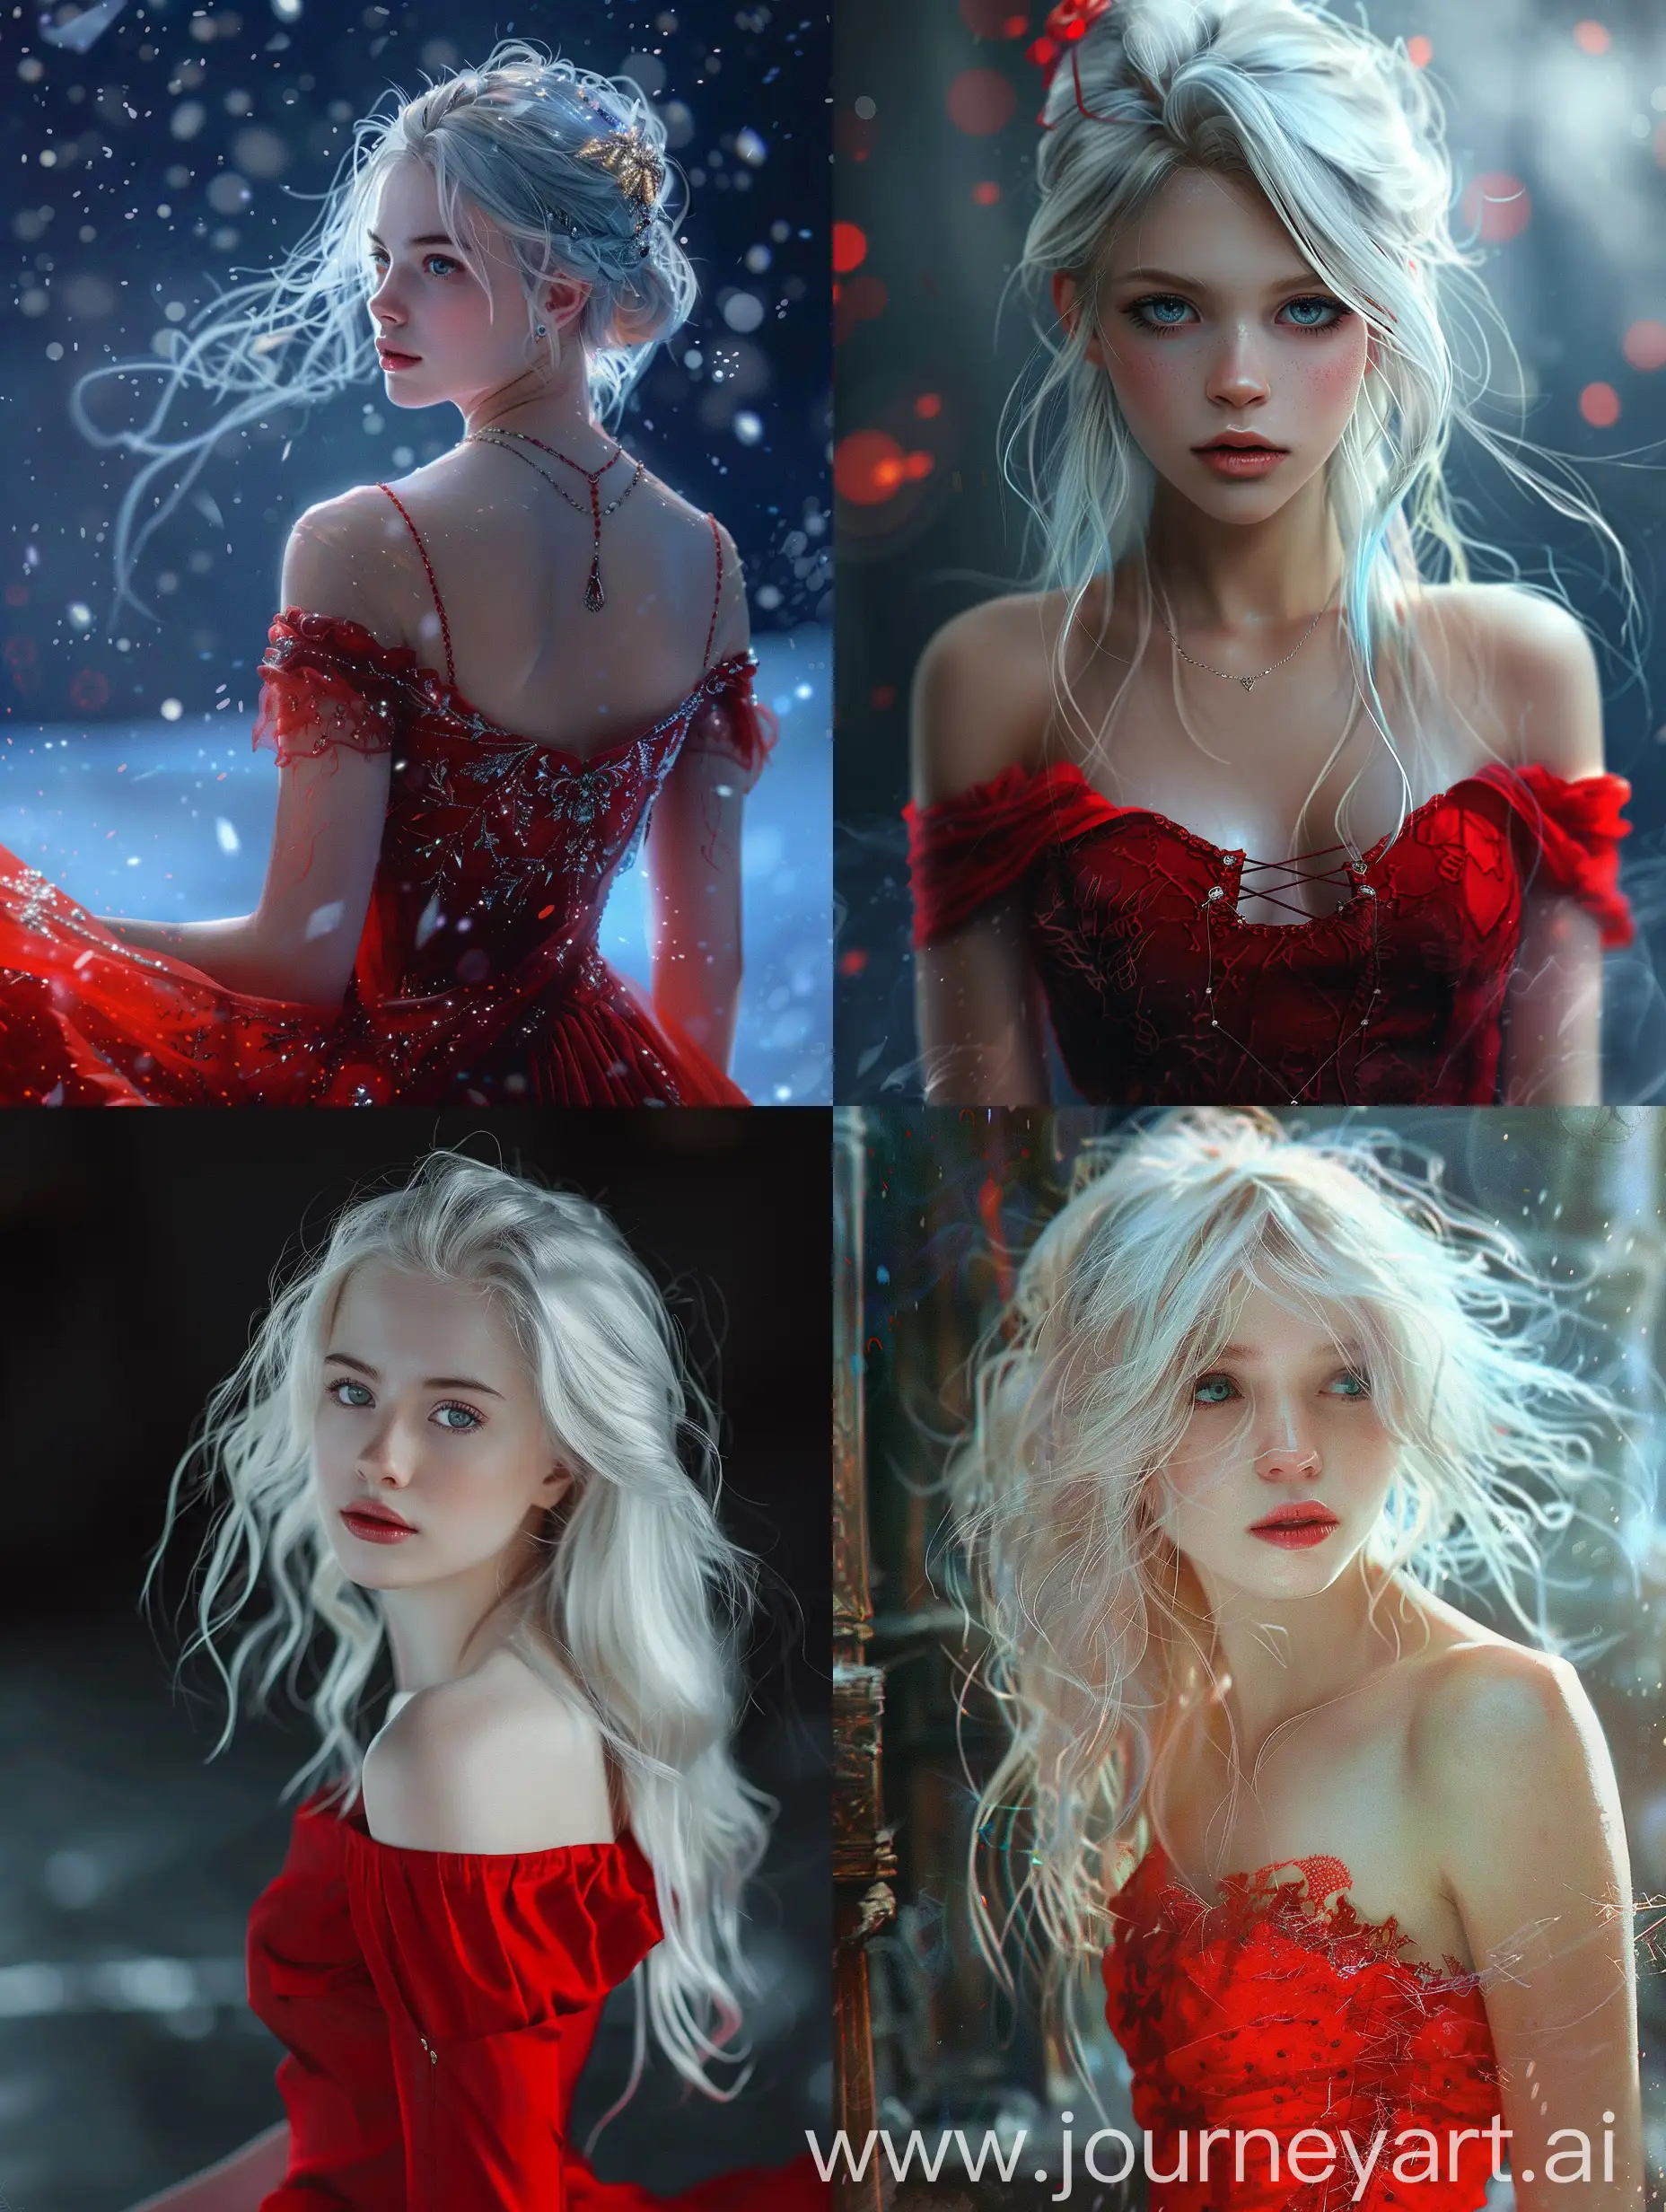 Девушка красивая, молодая лет 18, волосы белые, глаза голубые, одета в красное платье, на сцене крутом 